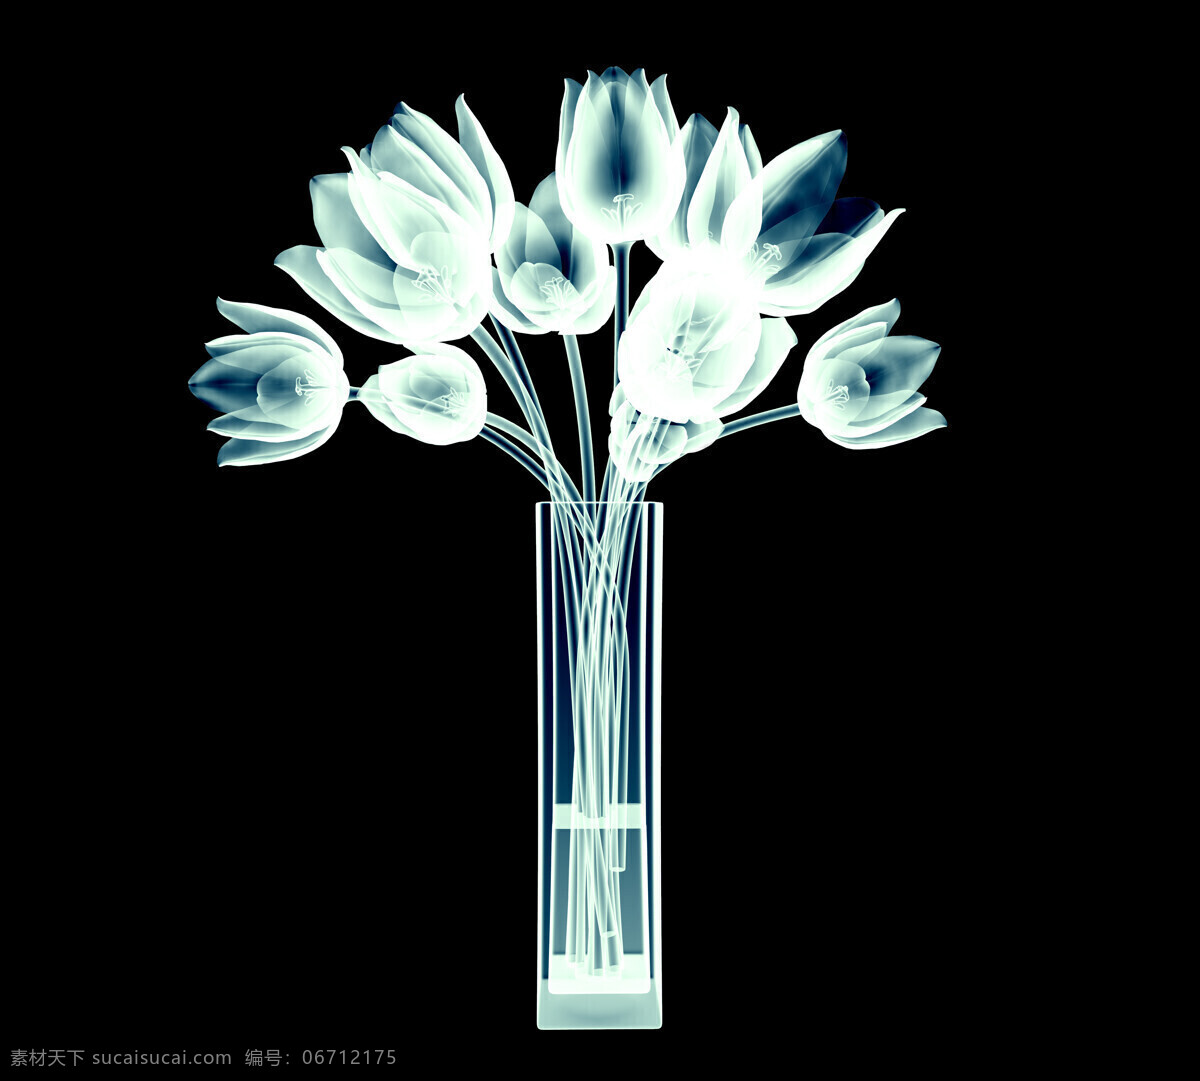 x 射线 扫描 郁金香 美丽鲜花 花朵 花卉 花瓶 梦幻花朵 其他类别 生活百科